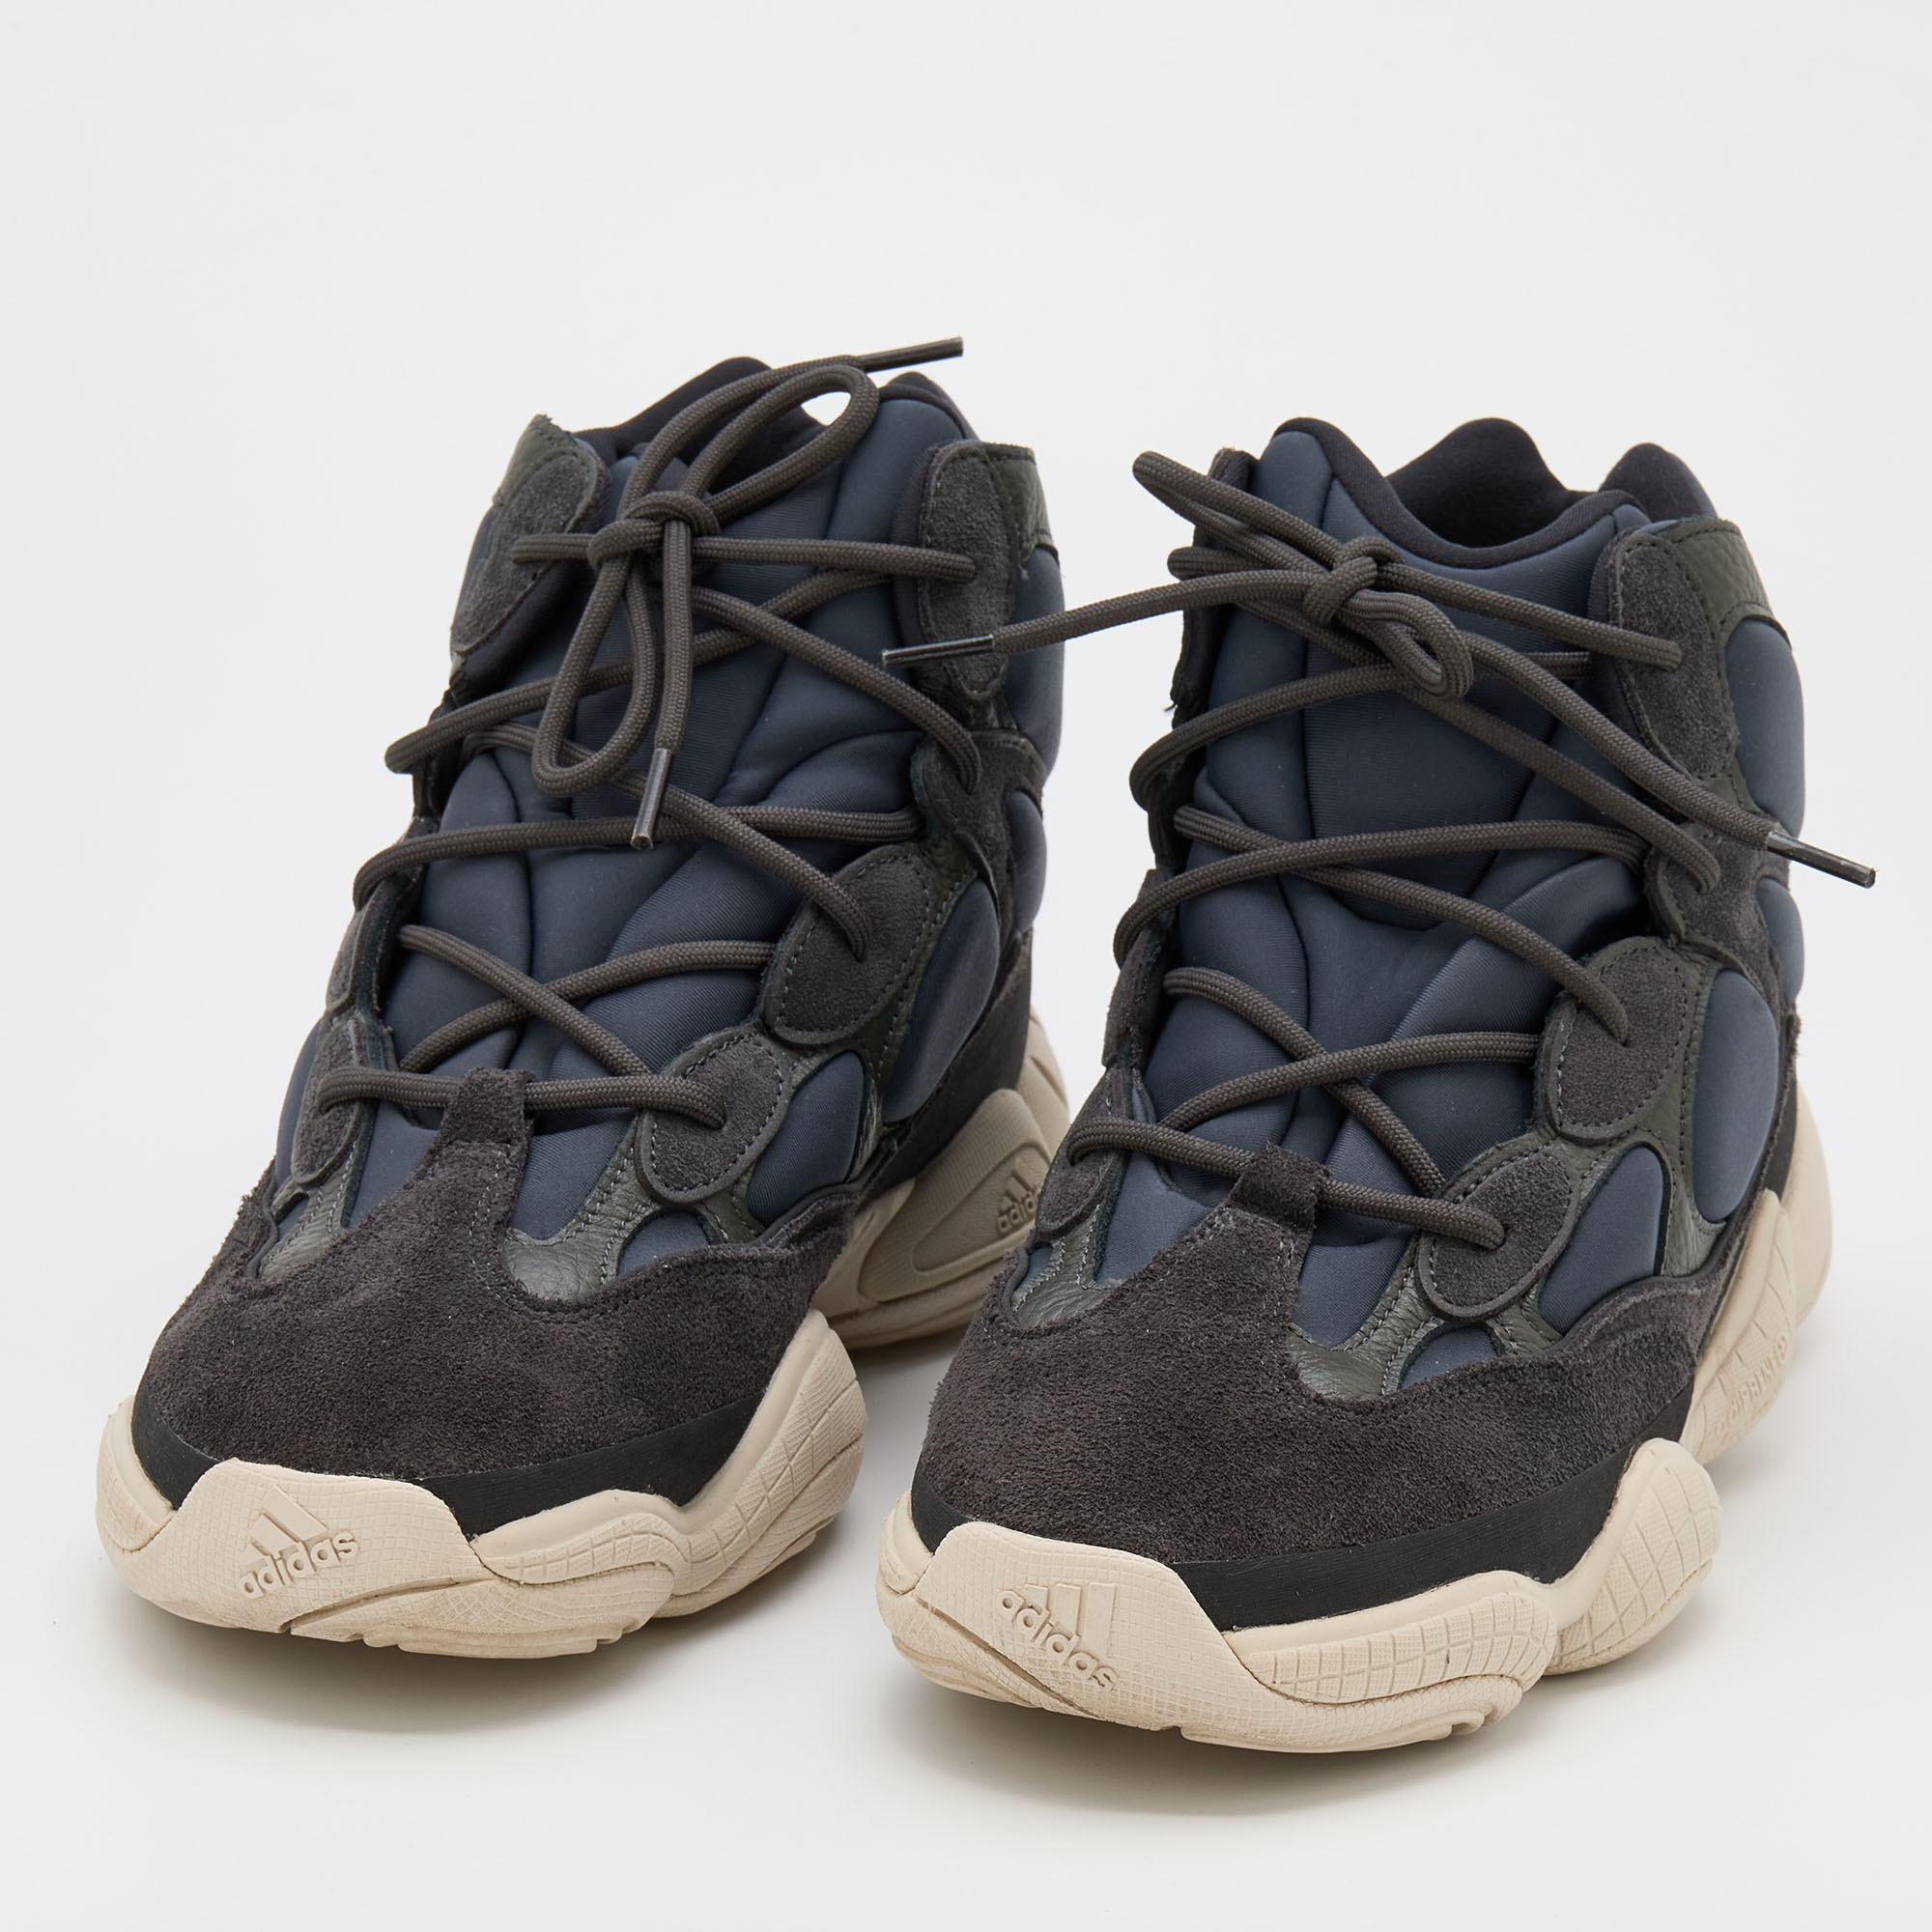 

Yeezy x Adidas Blue/Grey Neoprene and Suede Yeezy 500 High Slate Sneakers Size 46 2/3